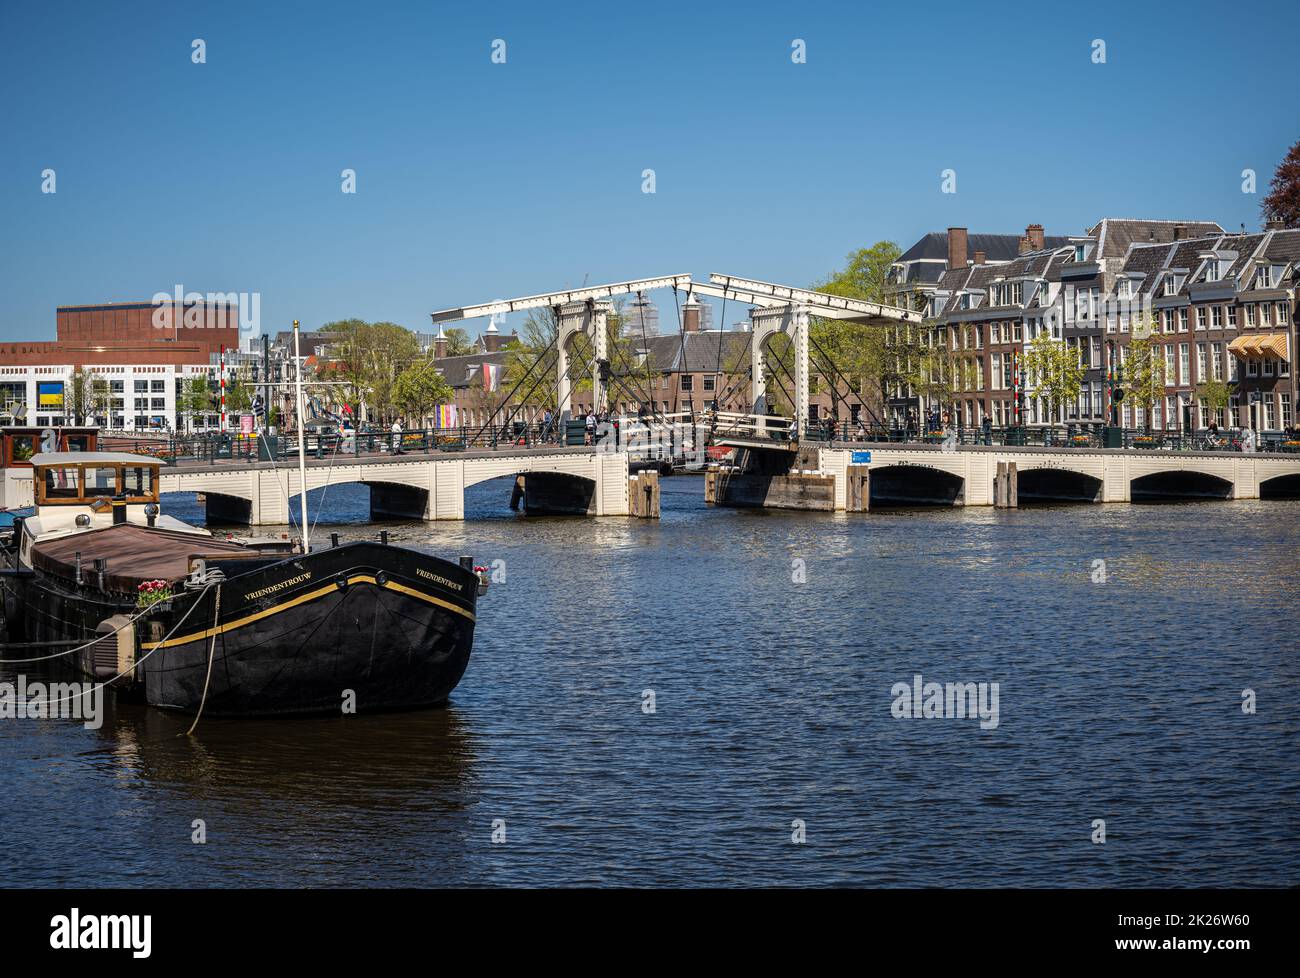 de magere brug or ‘skinny bridge’, Amsterdam Stock Photo